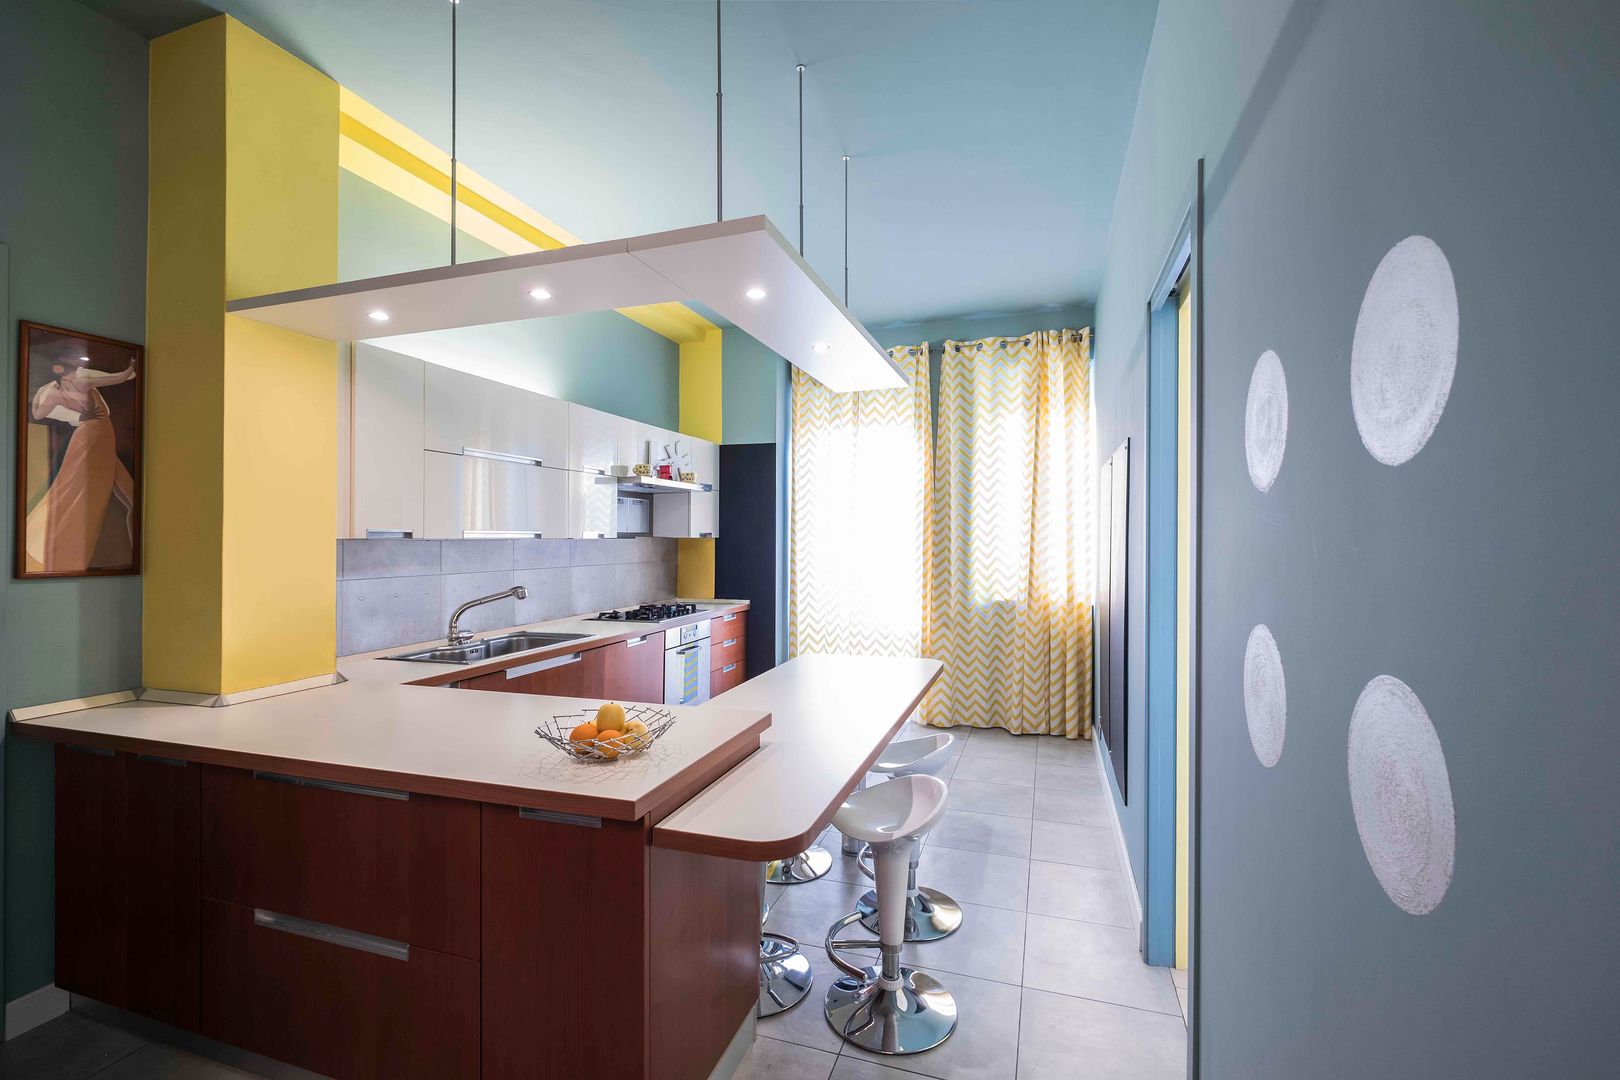 Cucina UAU un'architettura unica Cucina eclettica azzurro,argento,giallo